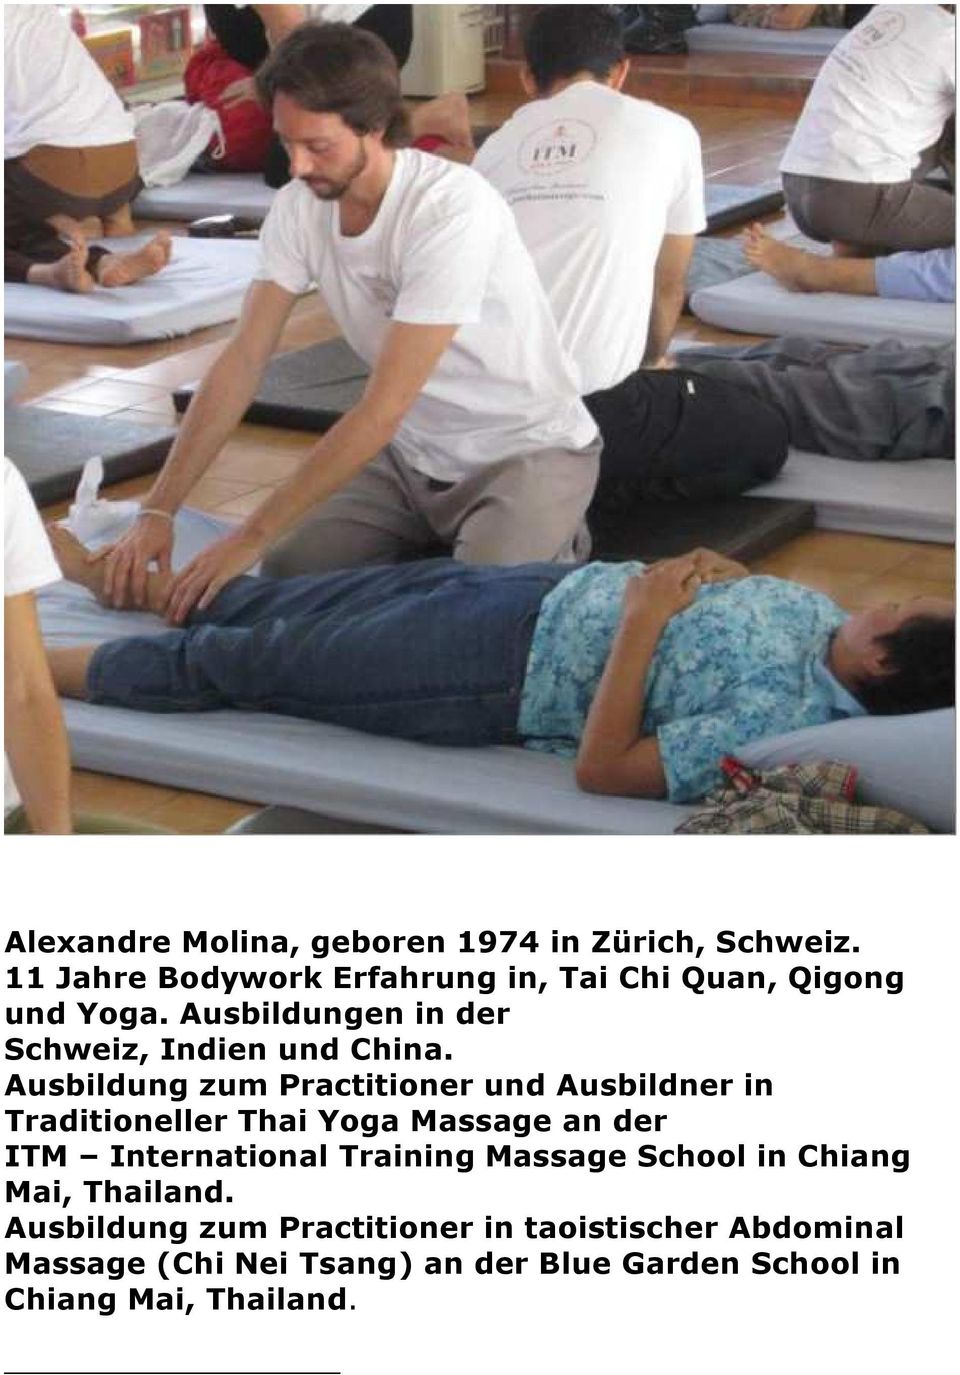 Ausbildung zum Practitioner und Ausbildner in Traditioneller Thai Yoga Massage an der ITM International